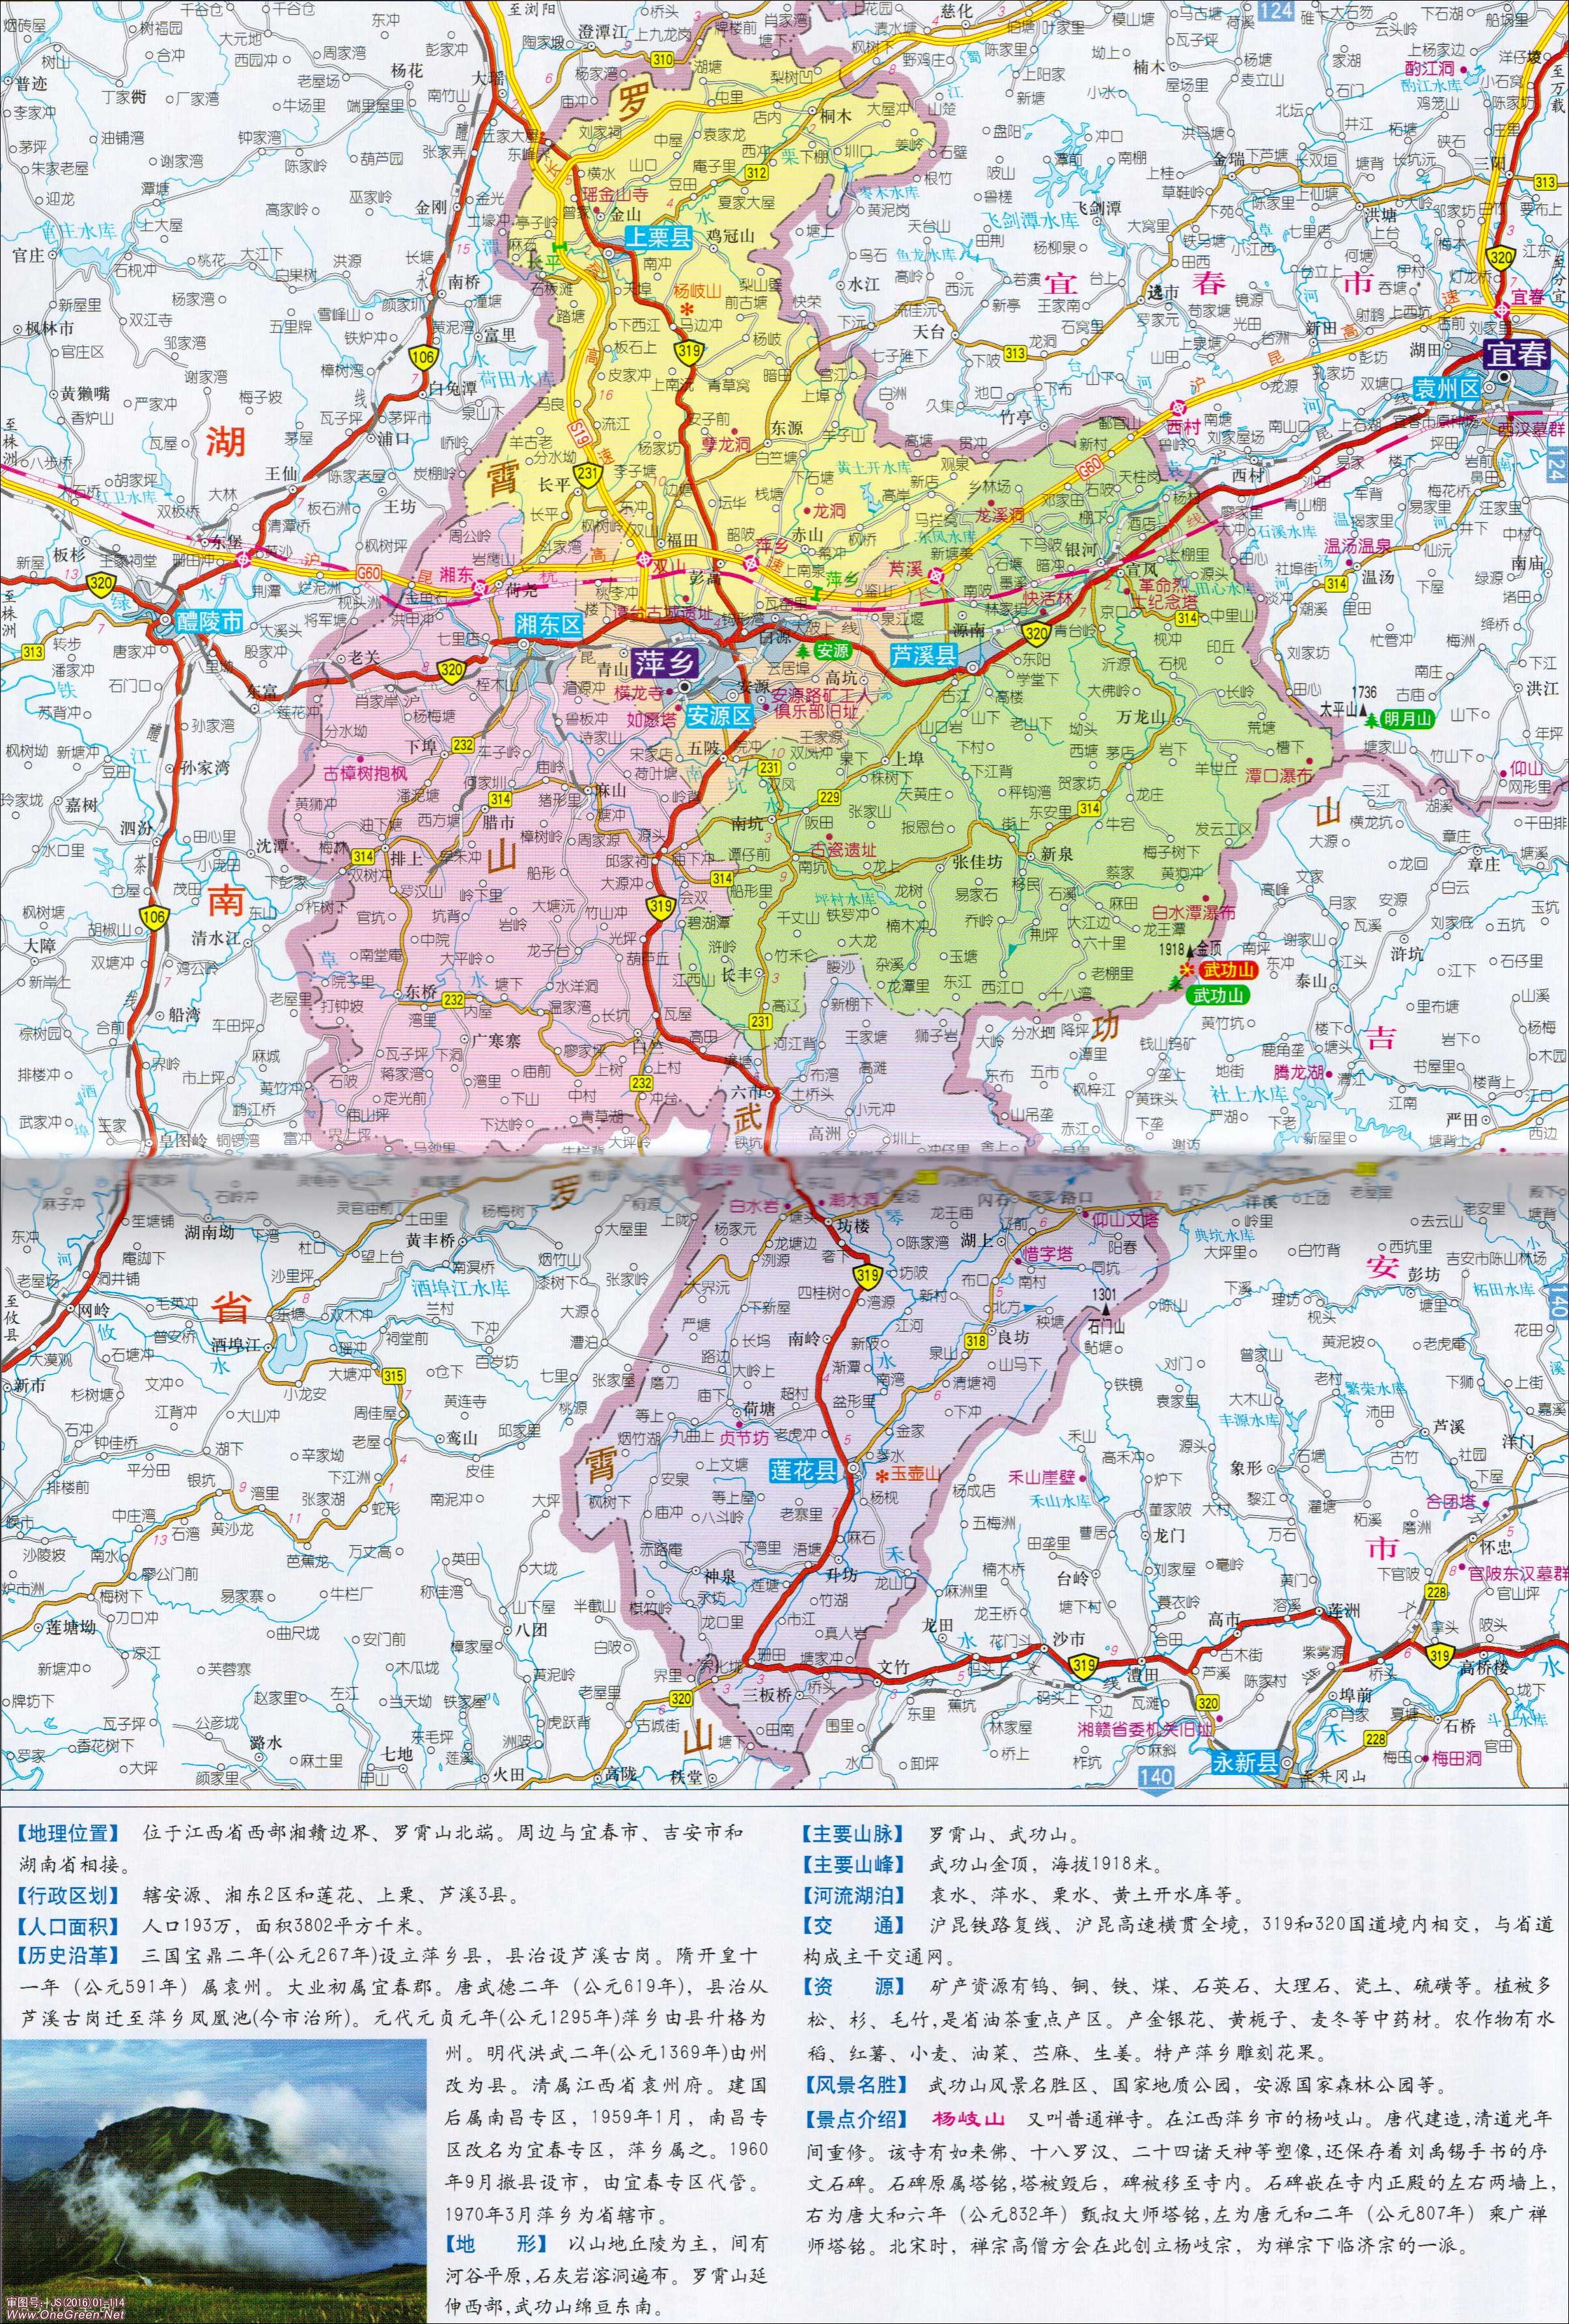 新余  鹰潭  赣州  吉安  宜春  抚州  上饶  景德镇 上一张地图: 没